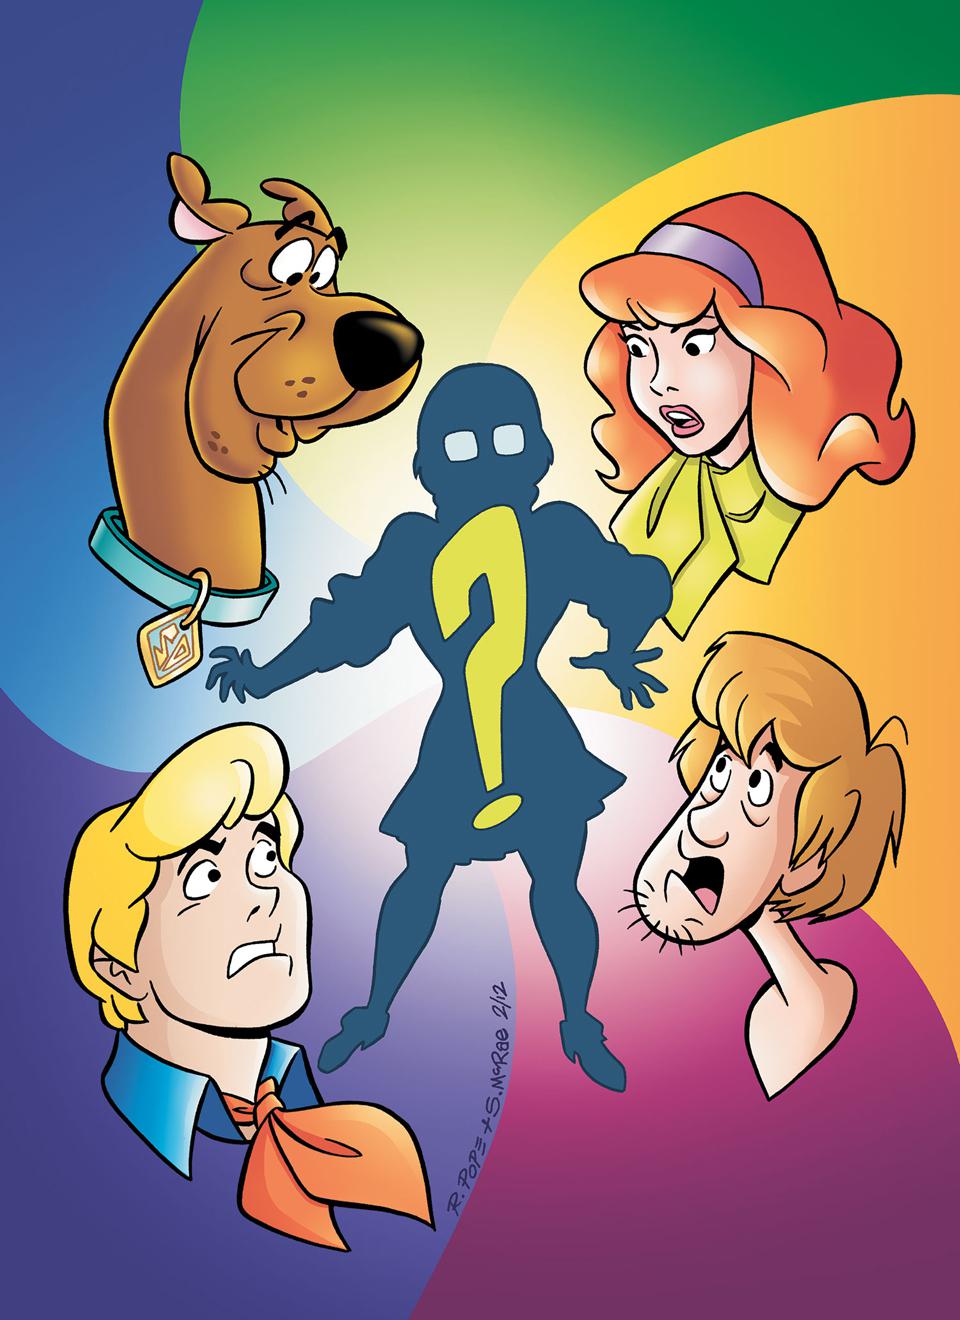 史酷比,Scooby-Doo,叔比狗,CARTOON,卡通